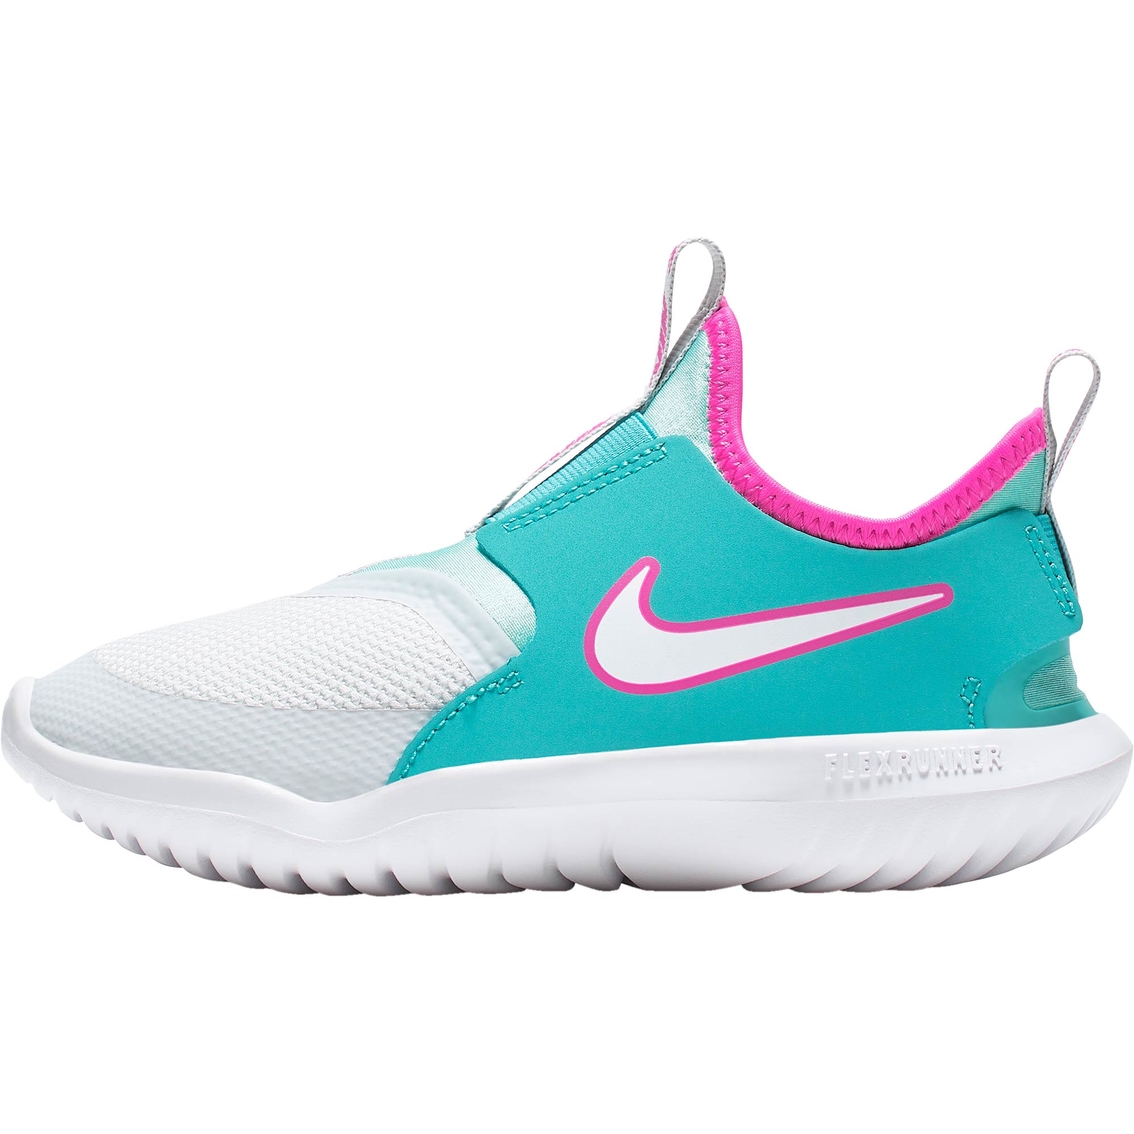 Nike Preschool Girls Flex Runner Sneakers - Image 2 of 4